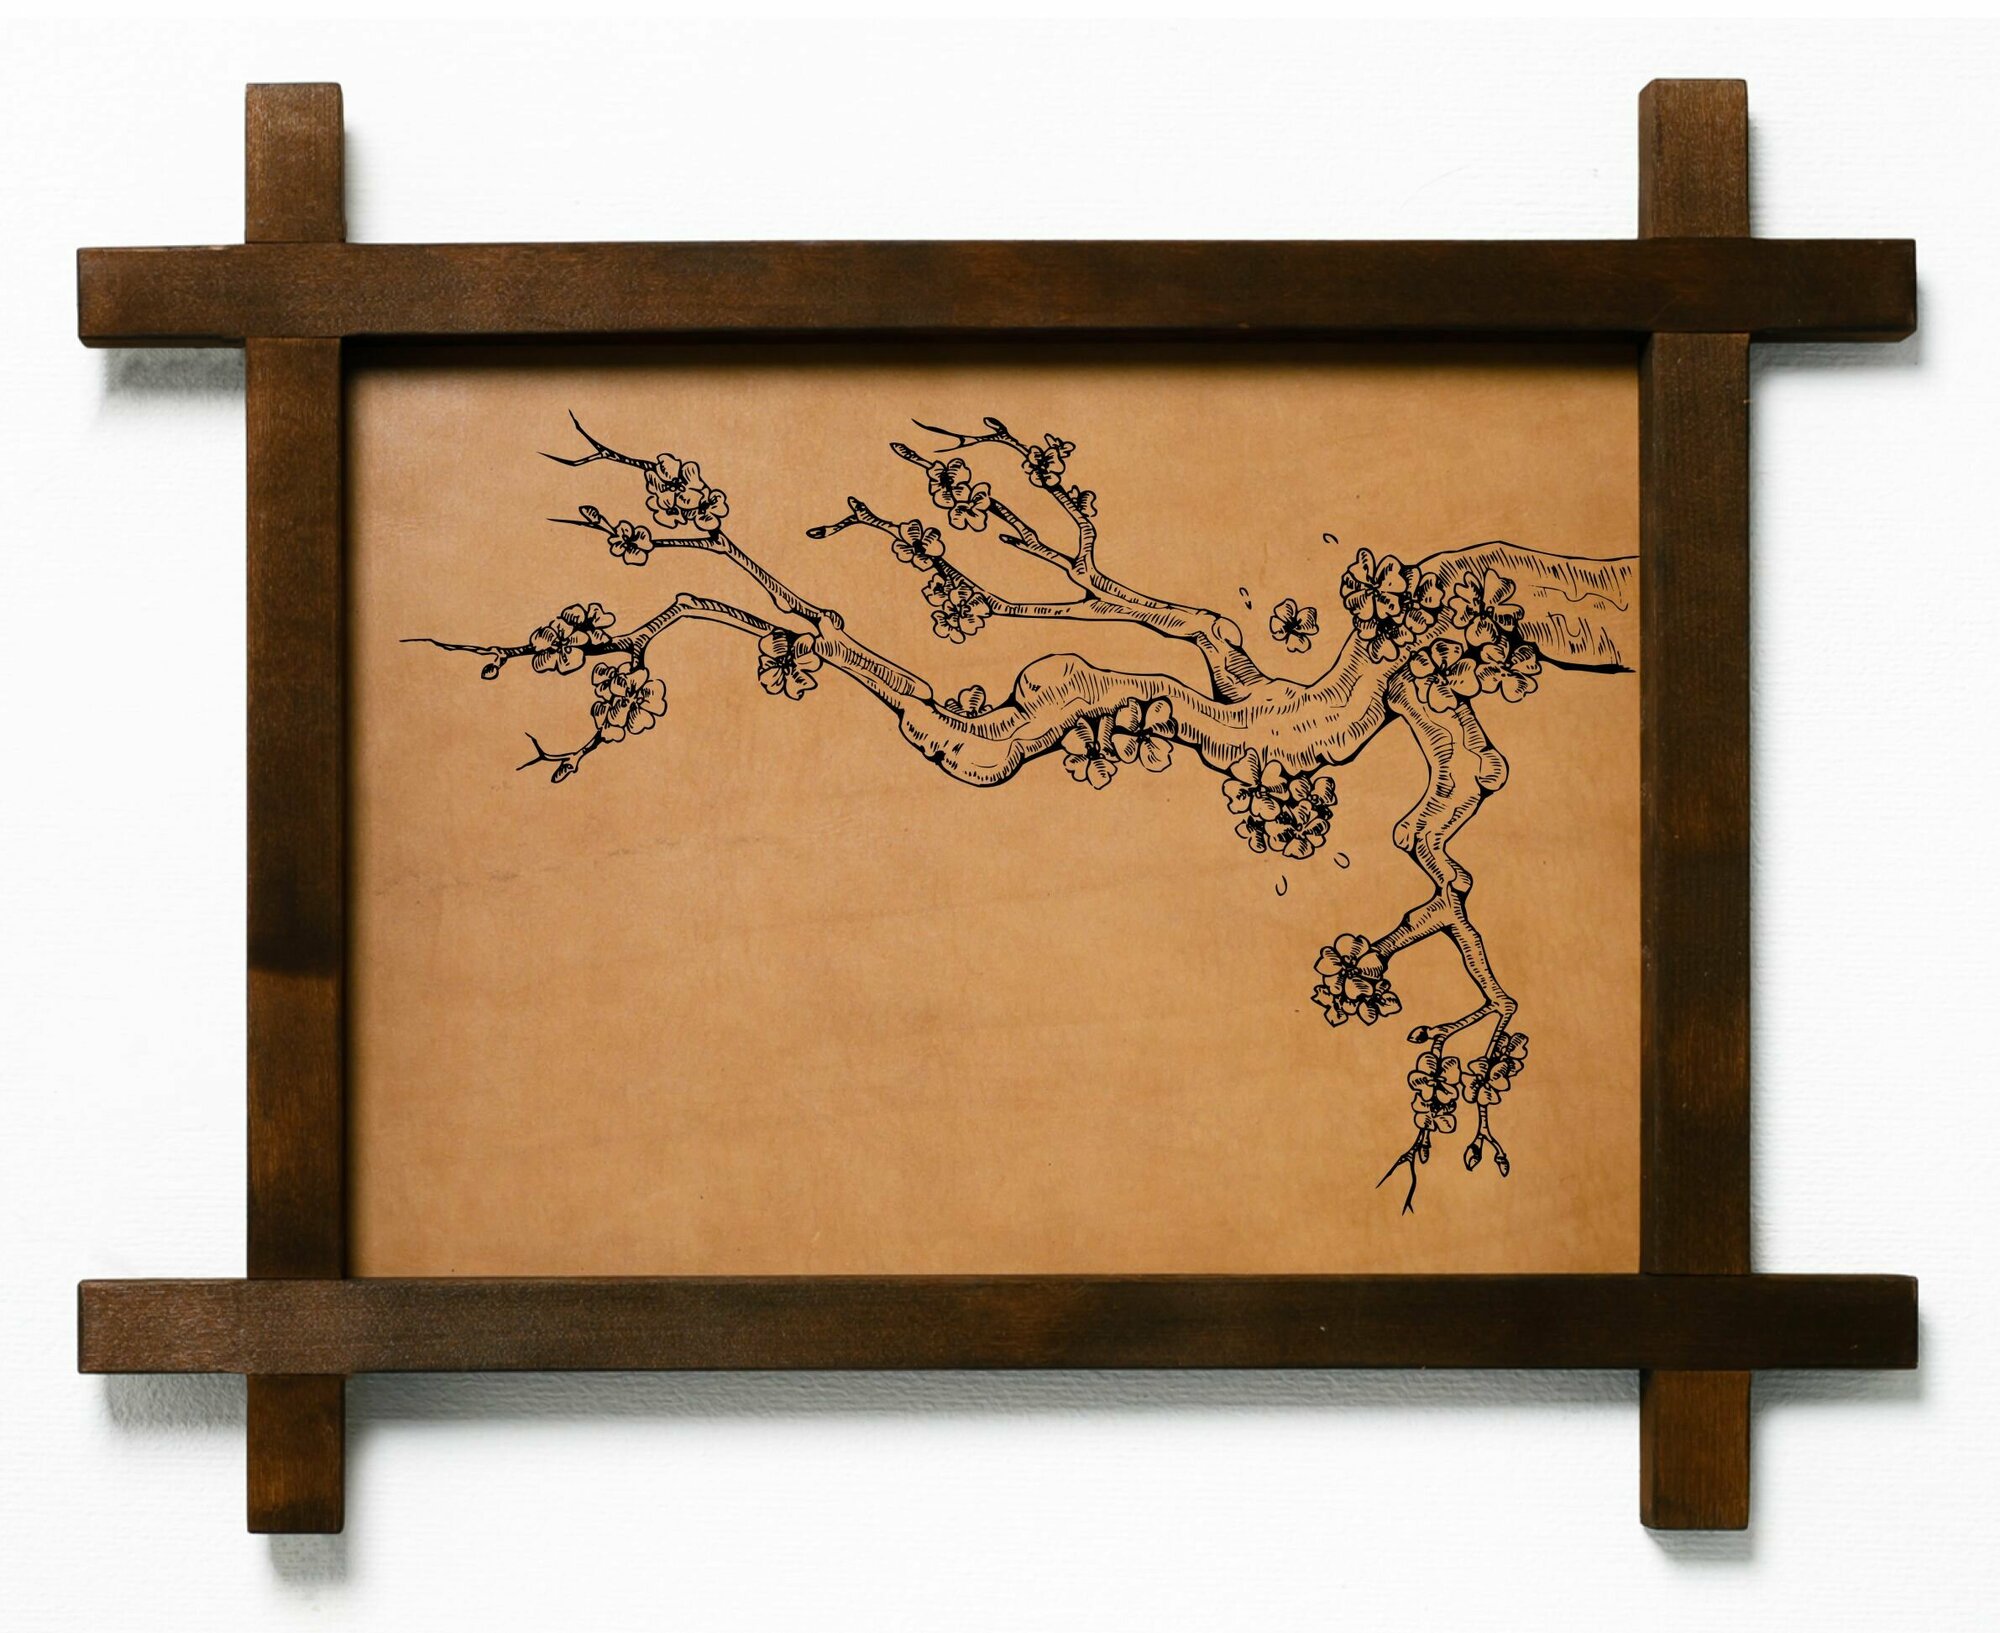 Картина Ветвь сакуры, гравировка на натуральной коже, интерьерная для украшения и декора на стену в деревянной раме, подарок, BoomGift